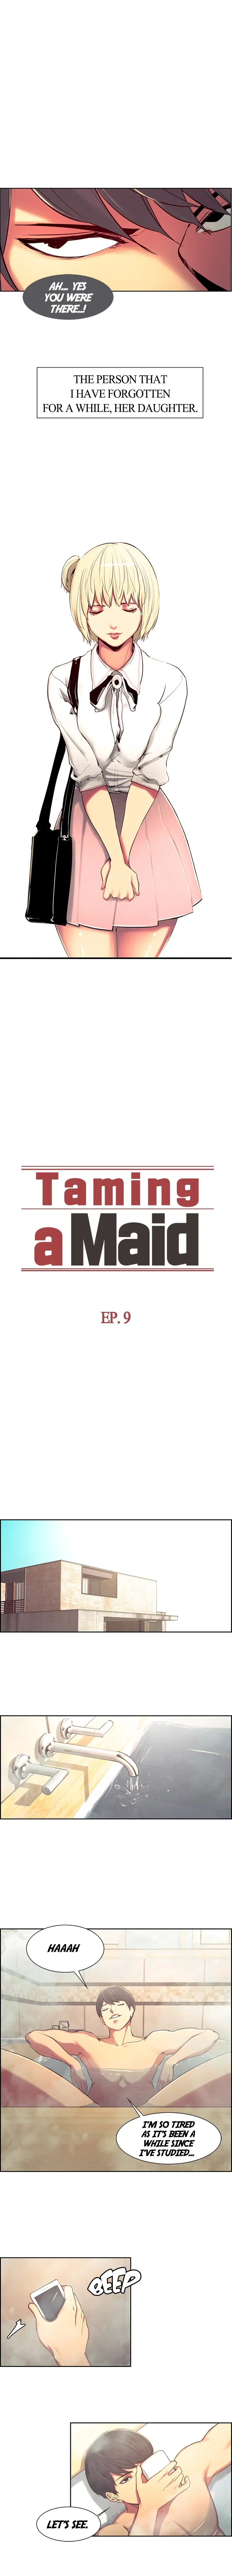 taming-a-maid-chap-9-0